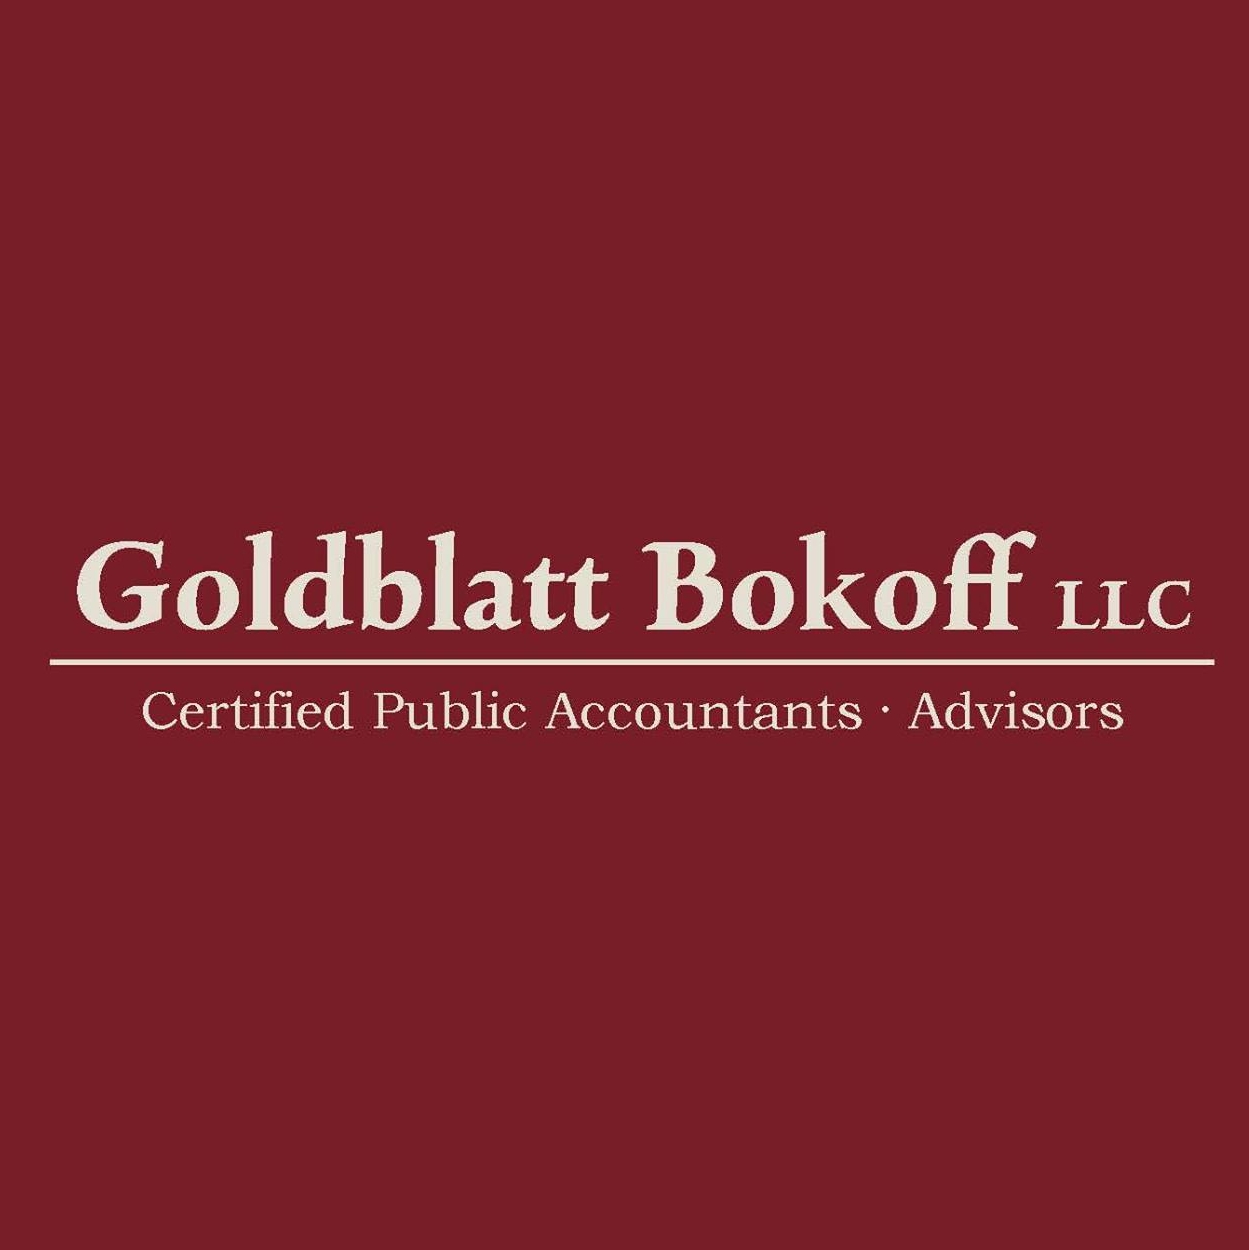 Goldblatt Bokoff, LLC